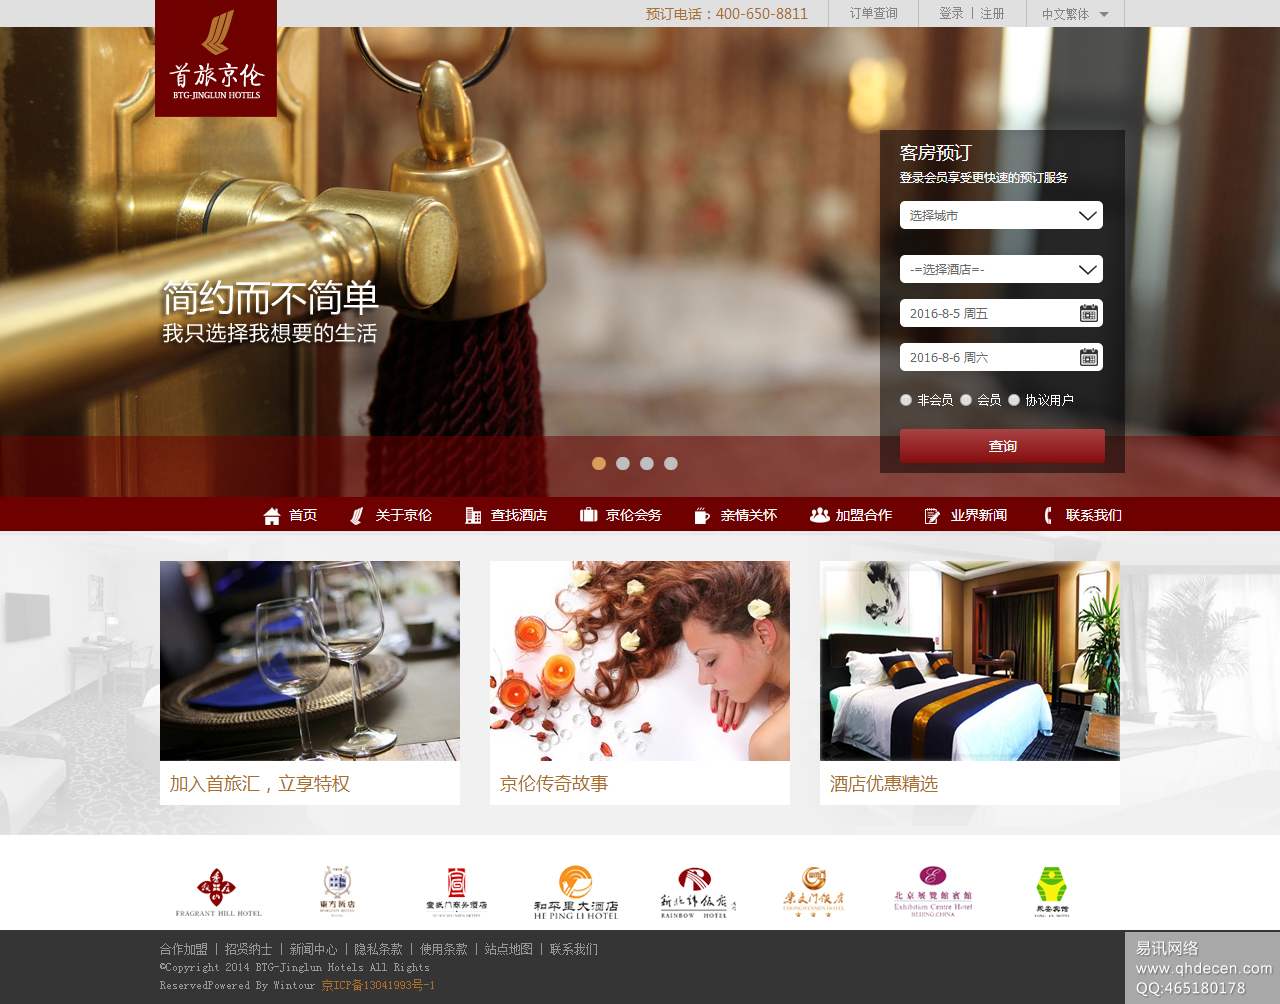 首旅京伦酒店管理公司官网—品牌酒店在线预订